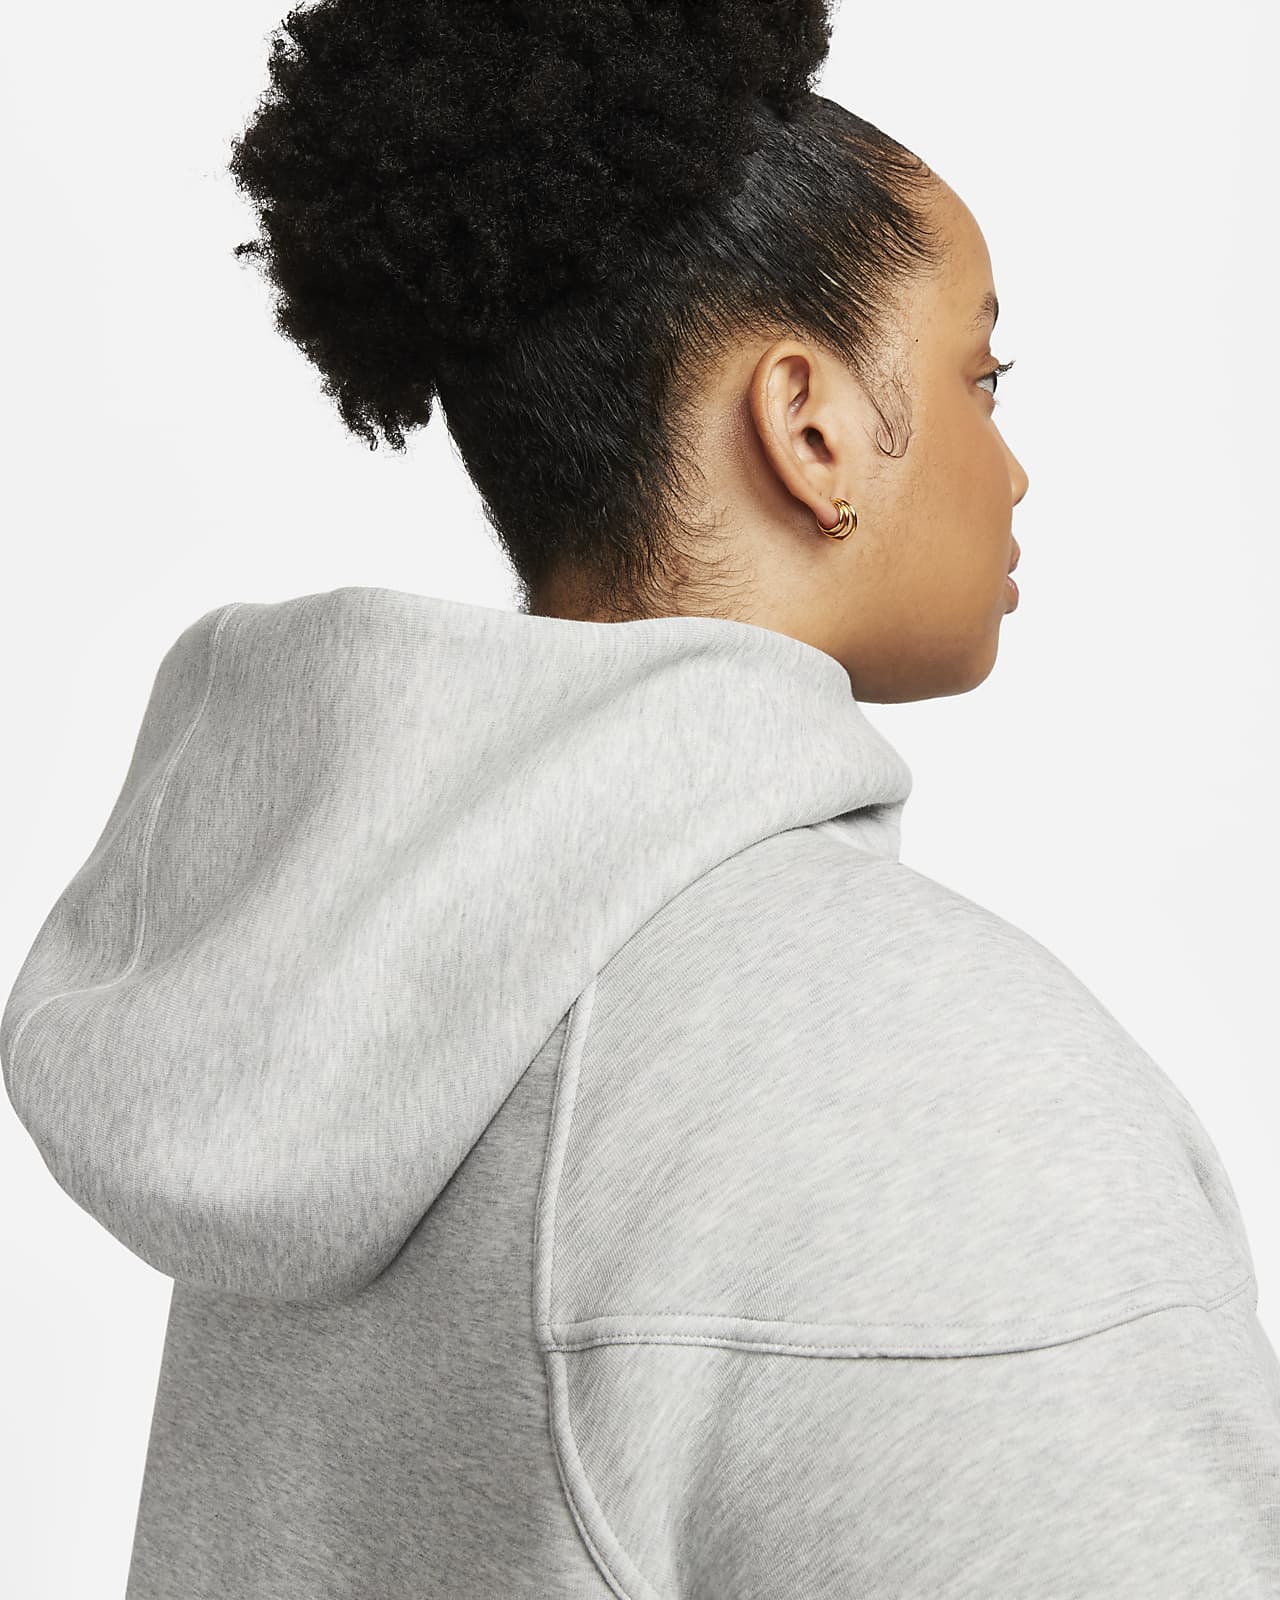 Nike Sportswear Women's Tech Fleece Windrunner Full Zip Hoodie Dark Grey  Heather/Black - US